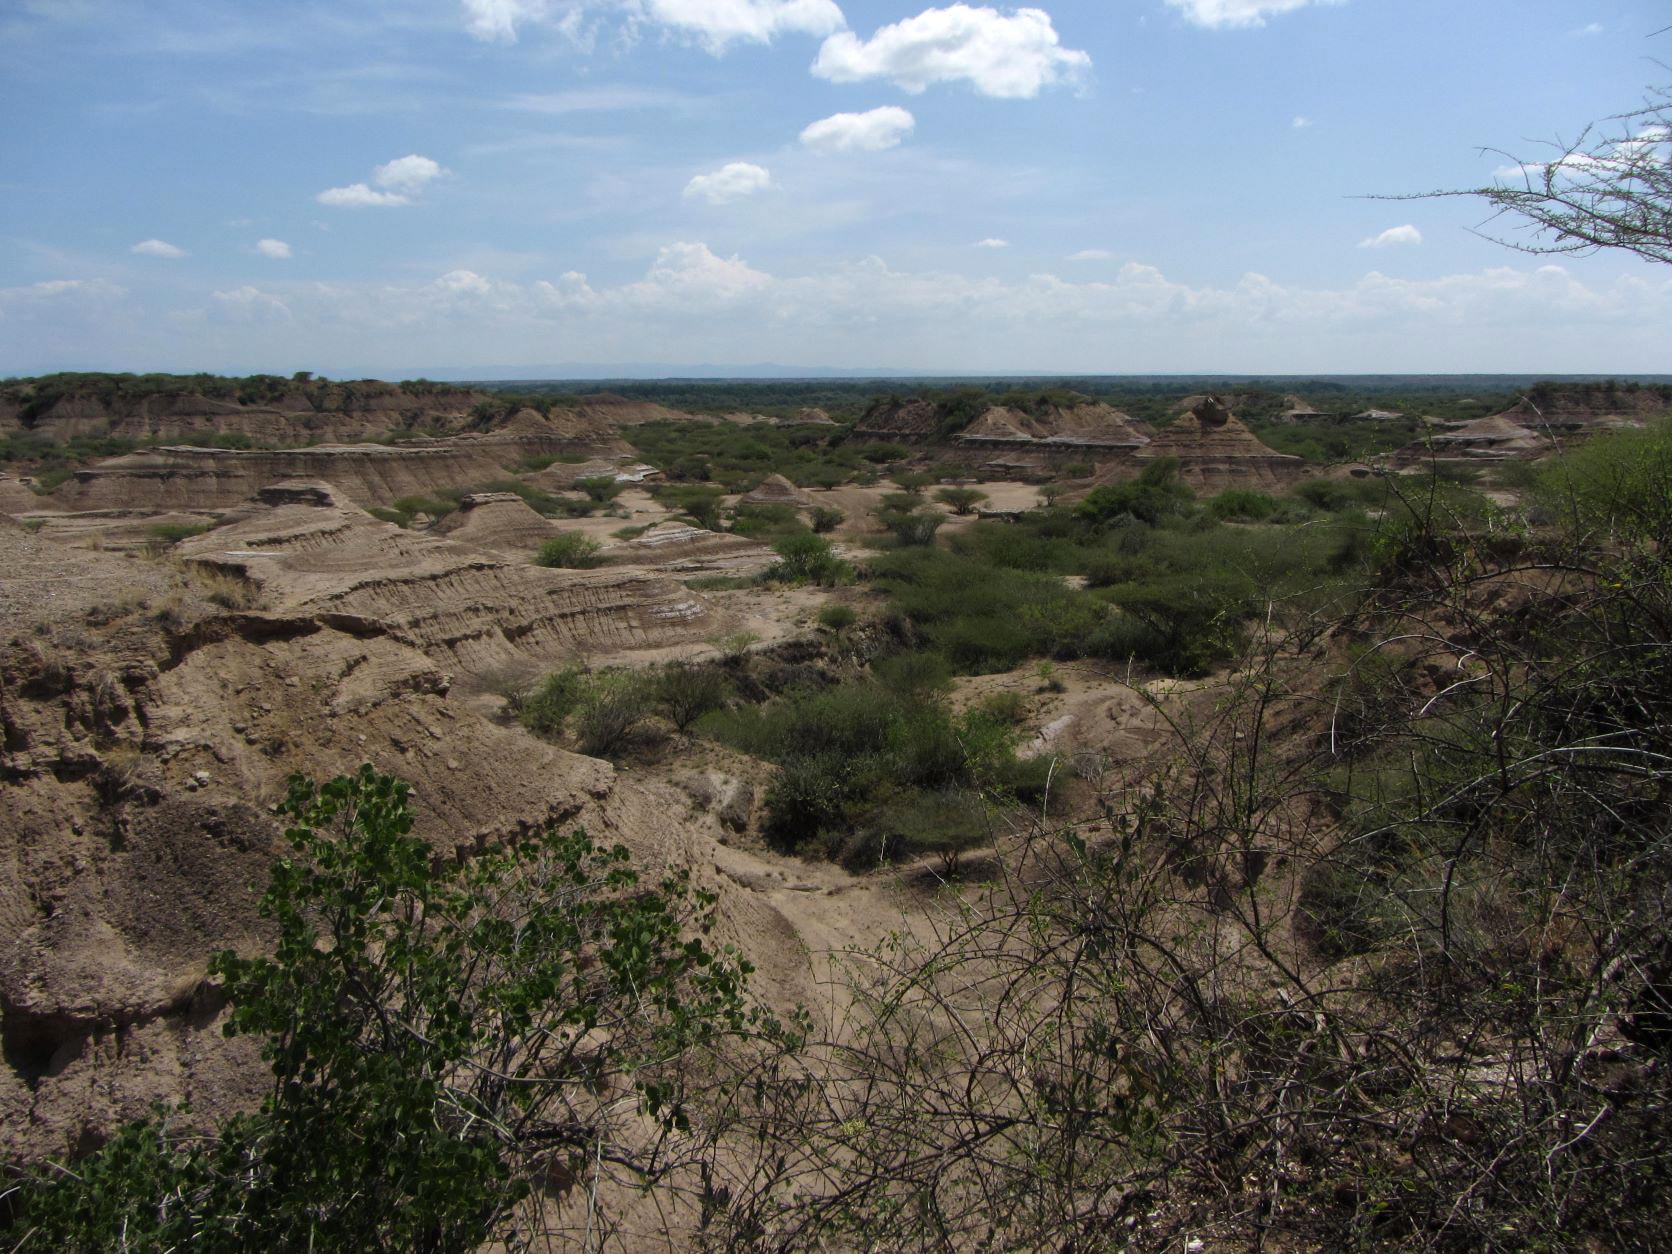 La Formación Omo Kibish en el suroeste de Etiopía, dentro del valle del Rift de África Oriental. La región es un área de alta actividad volcánica y una rica fuente de restos humanos primitivos y artefactos como herramientas de piedra. Crédito: Céline Vidal